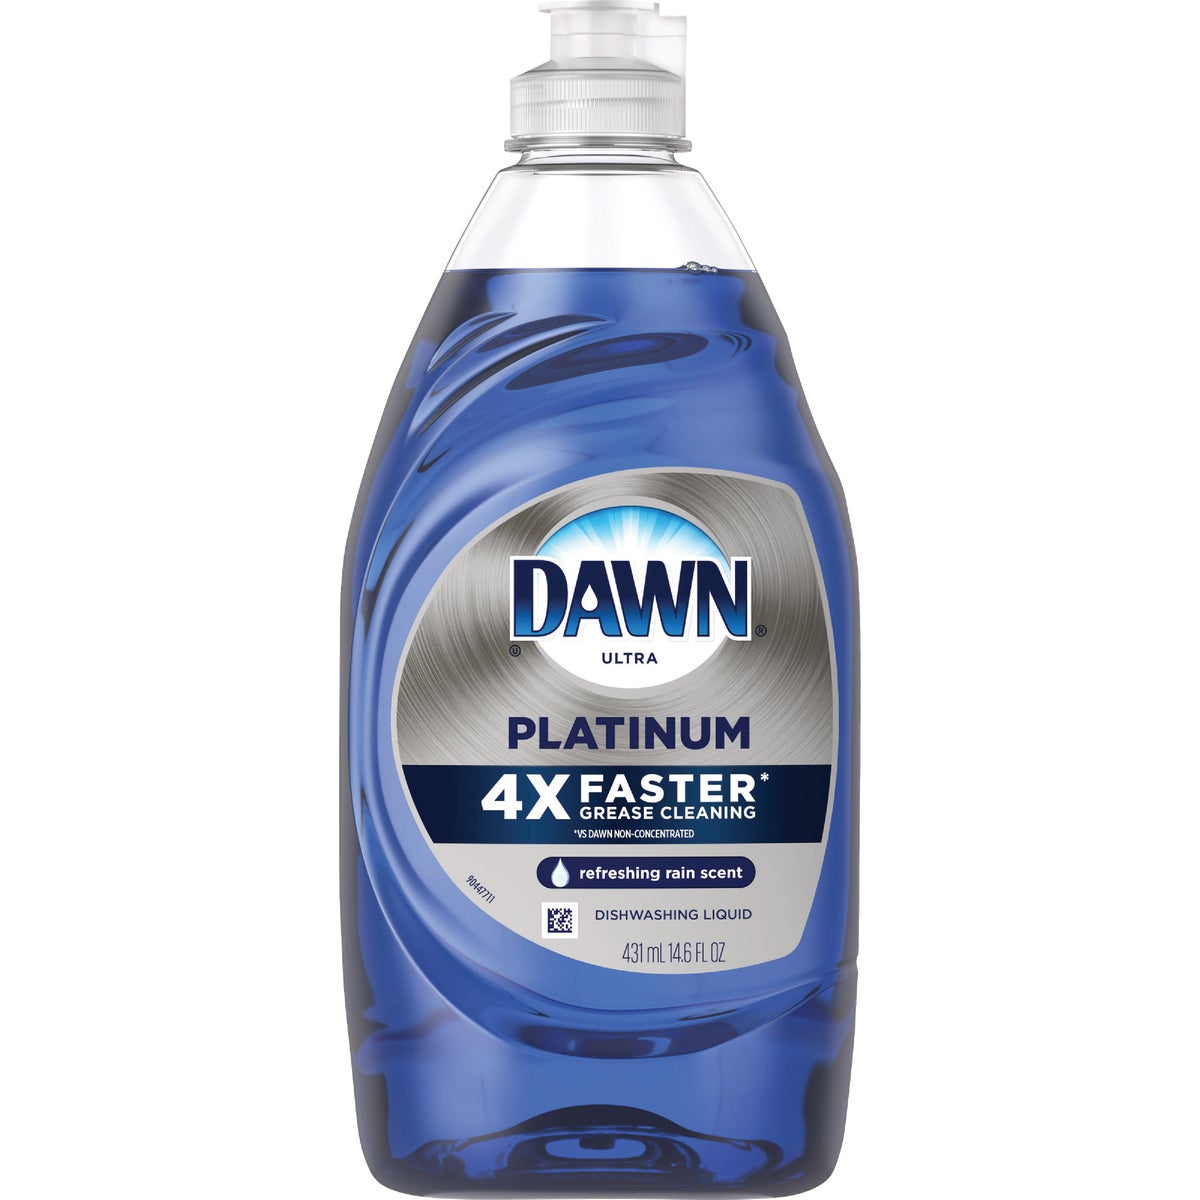 Dawn Platinum 14.6 Oz. Refreshing Rain Dishwashing Liquid Dish Soap